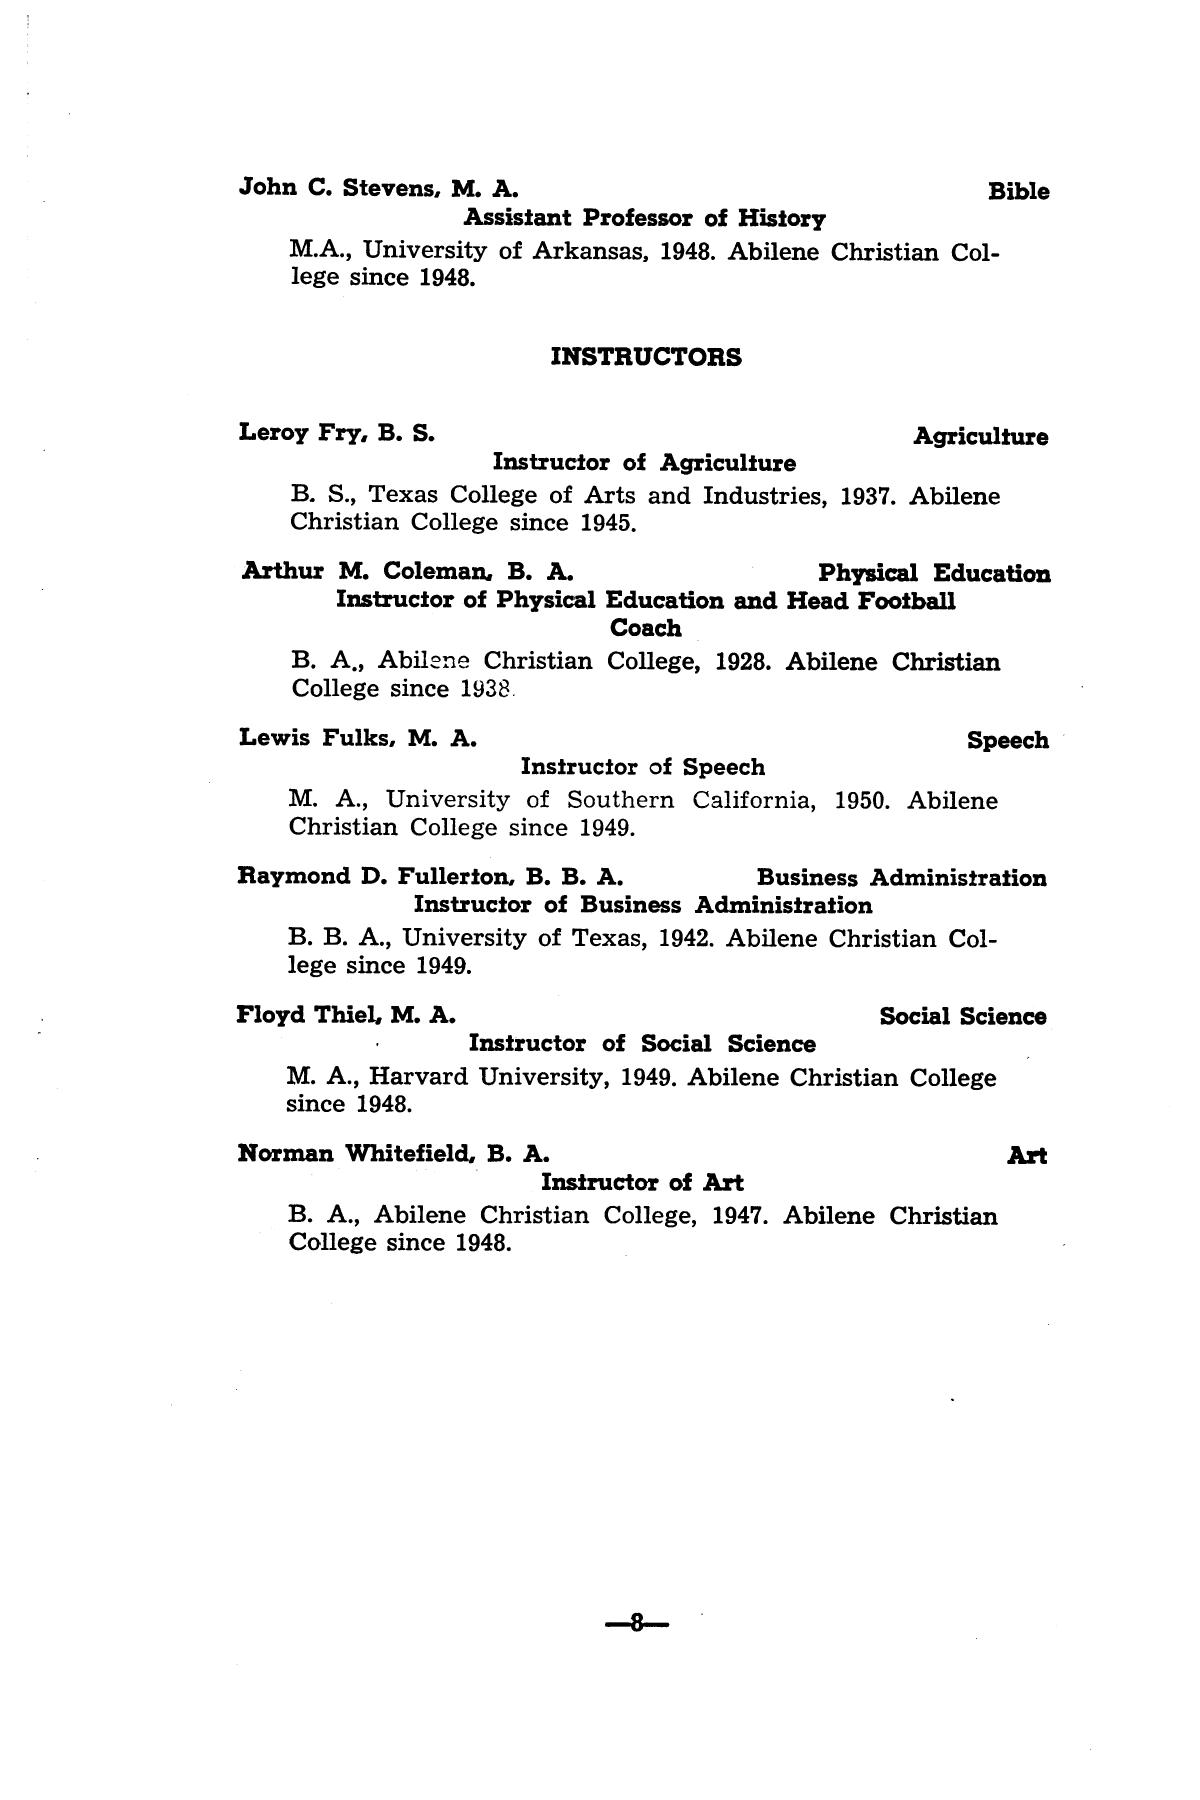 Catalog of Abilene Christian College, 1950
                                                
                                                    8
                                                